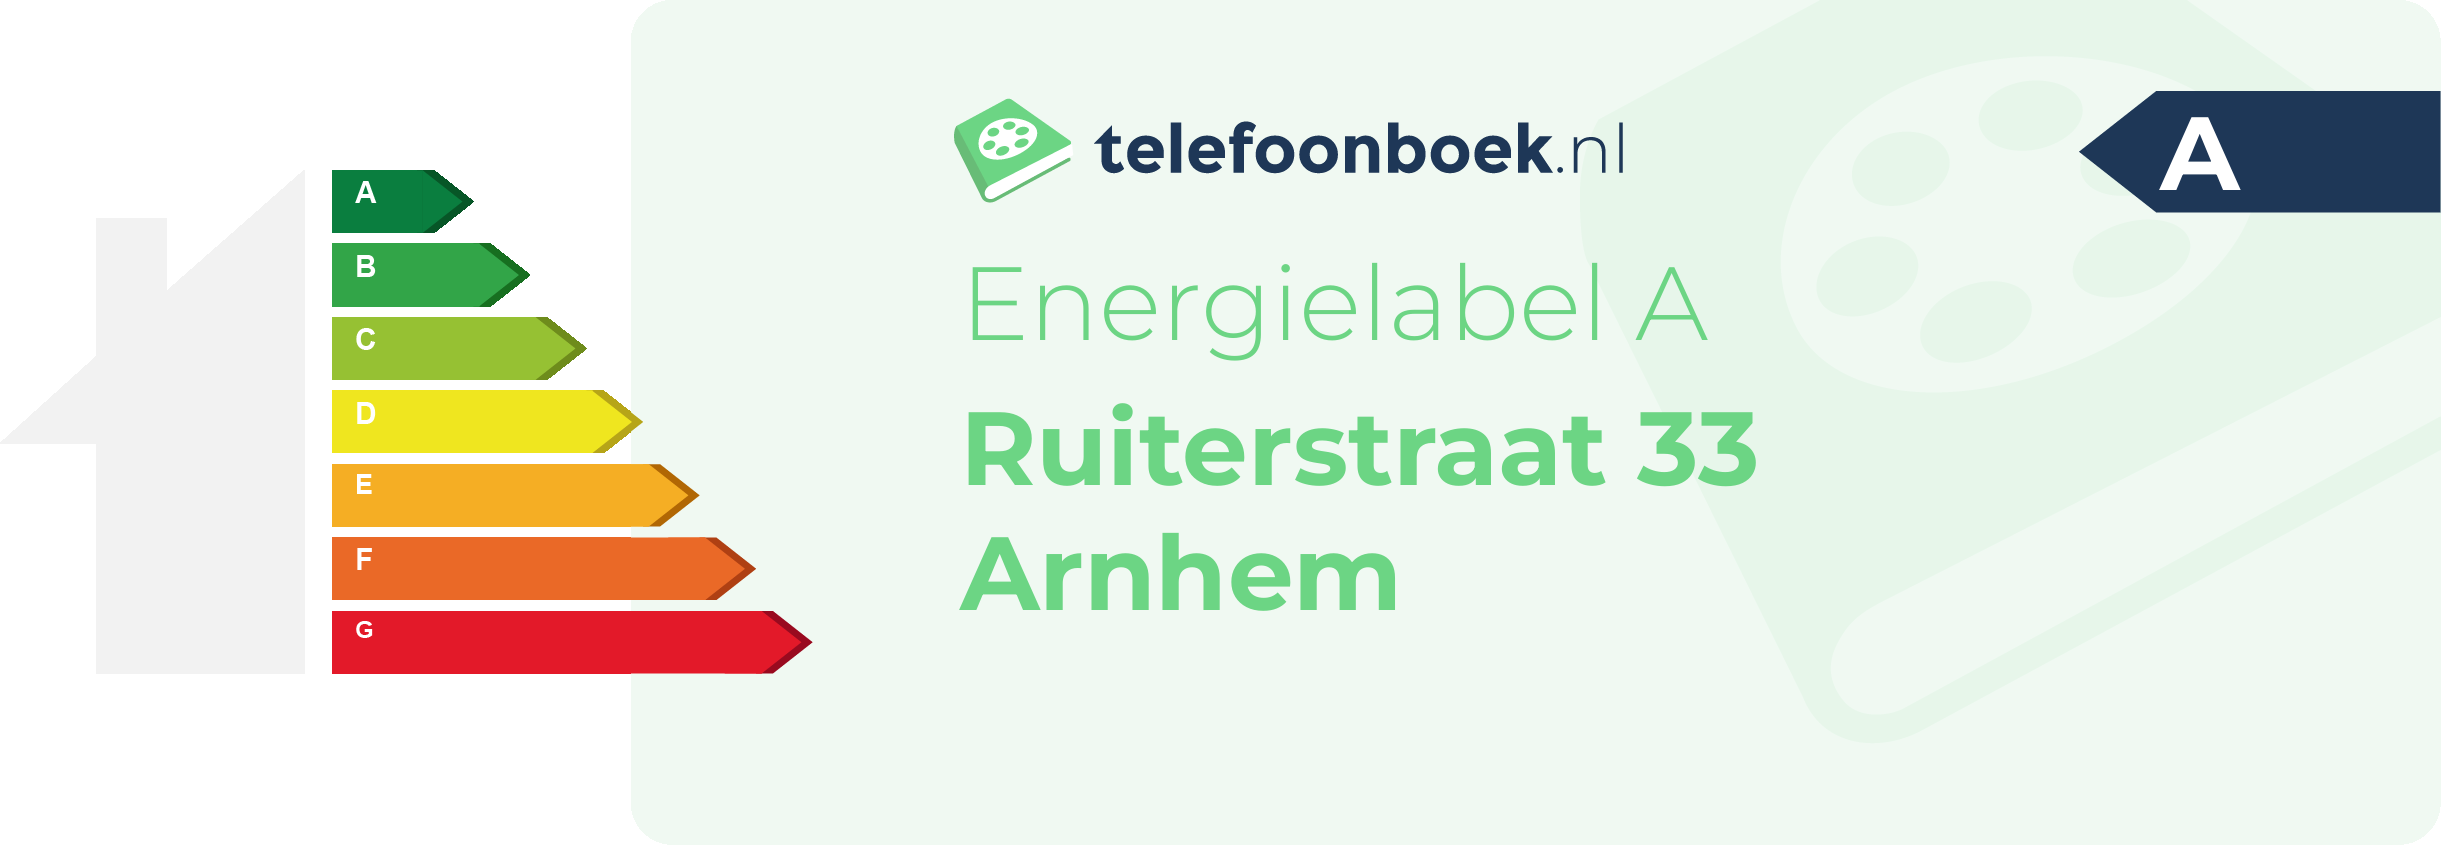 Energielabel Ruiterstraat 33 Arnhem